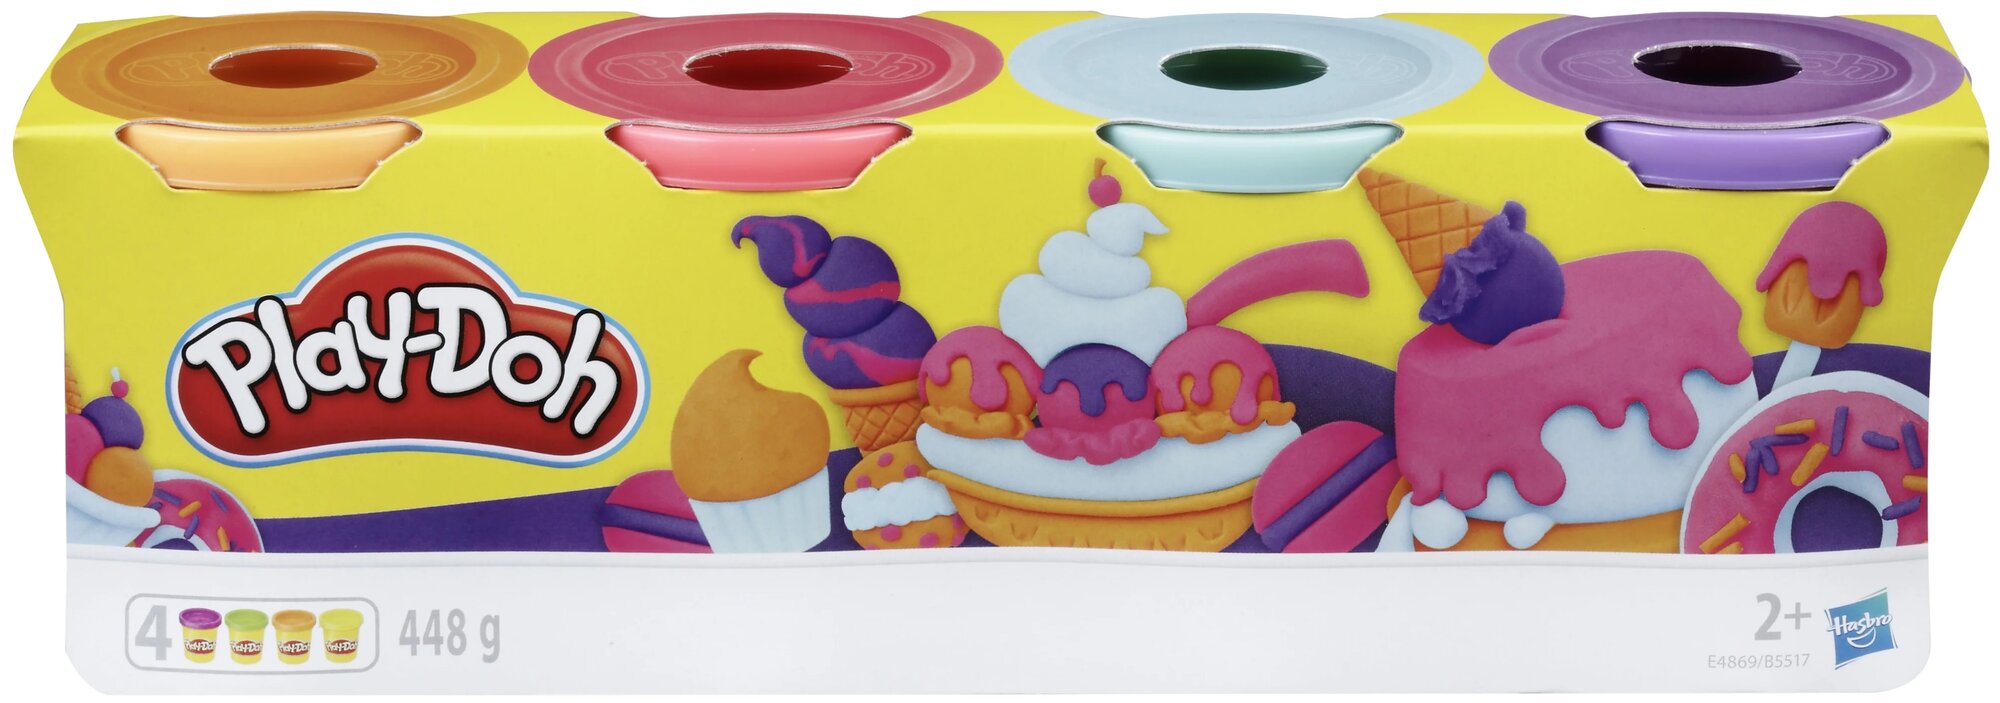 Масса для лепки Play-Doh Набор 4 банки, пастельные цвета, 448 гр (E4869/B5517) 4 цв.